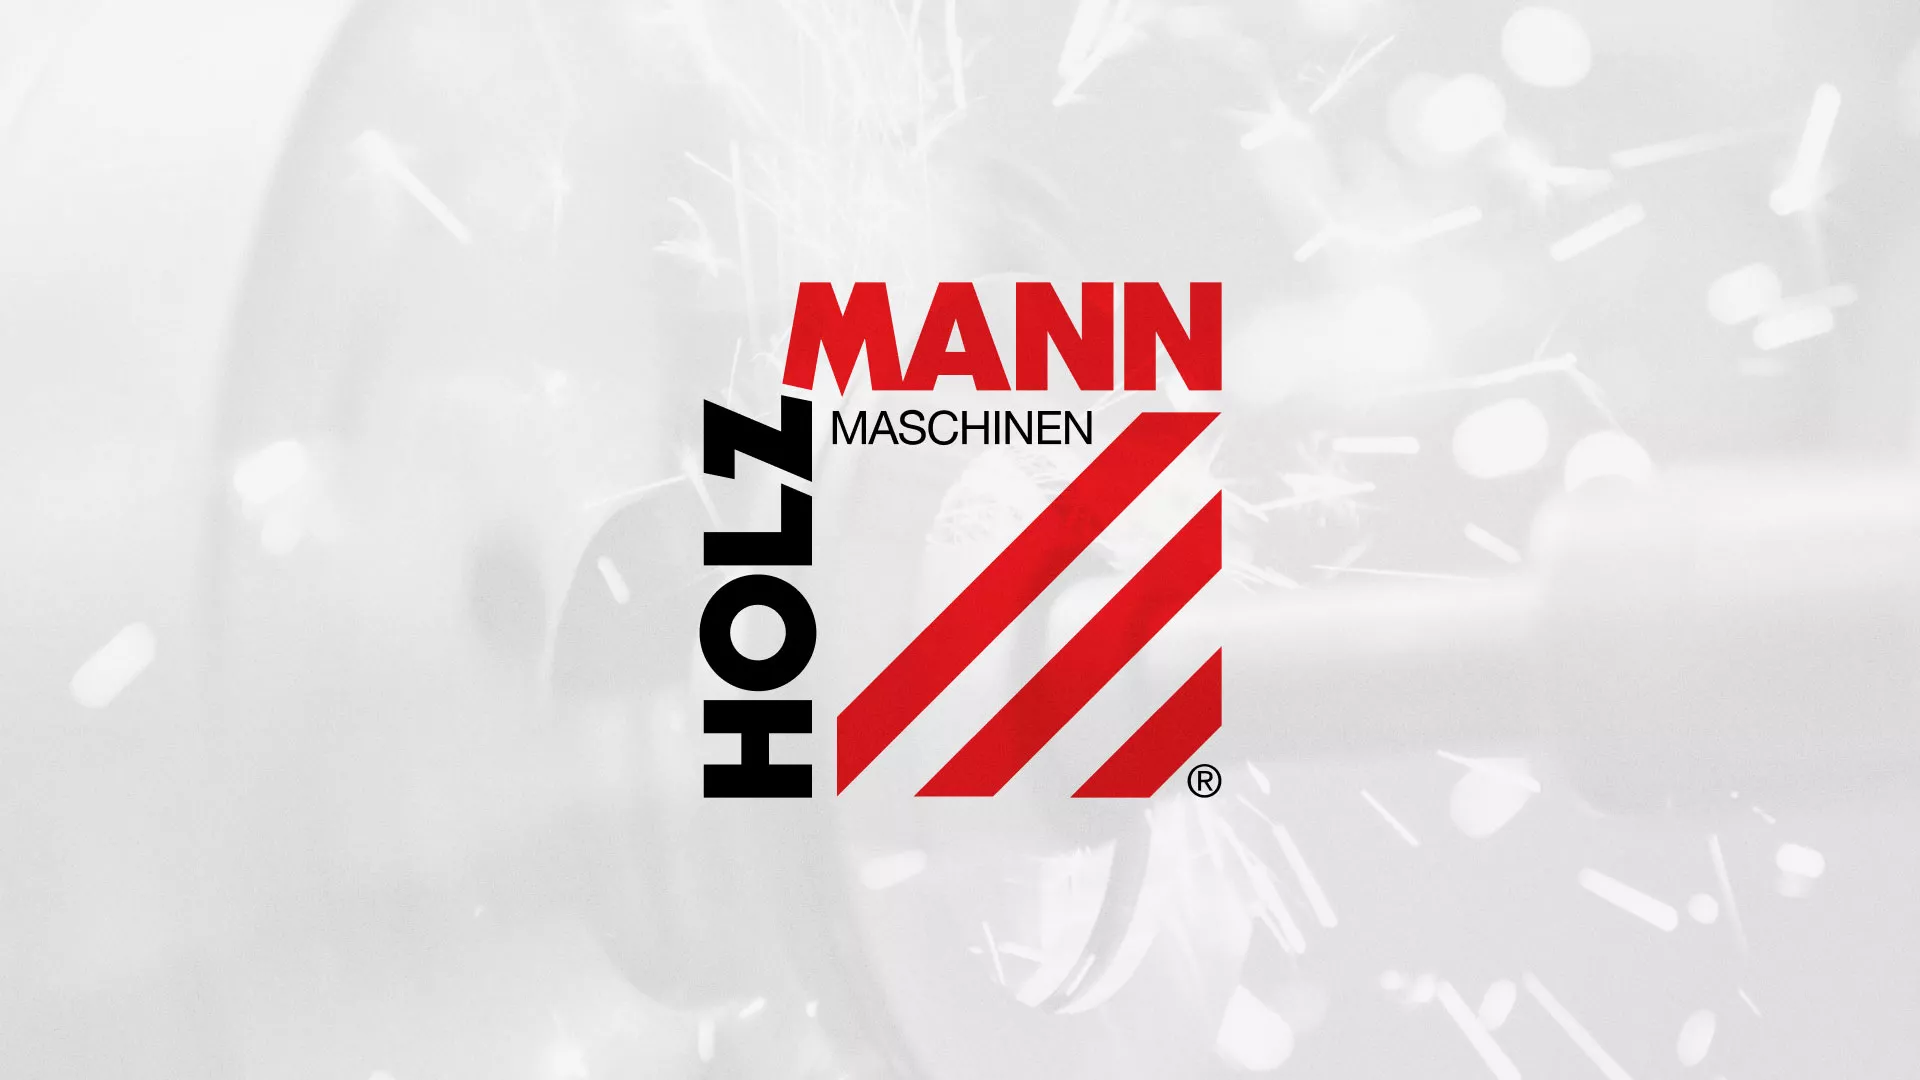 Создание сайта компании «HOLZMANN Maschinen GmbH» в Славянске-на-Кубани